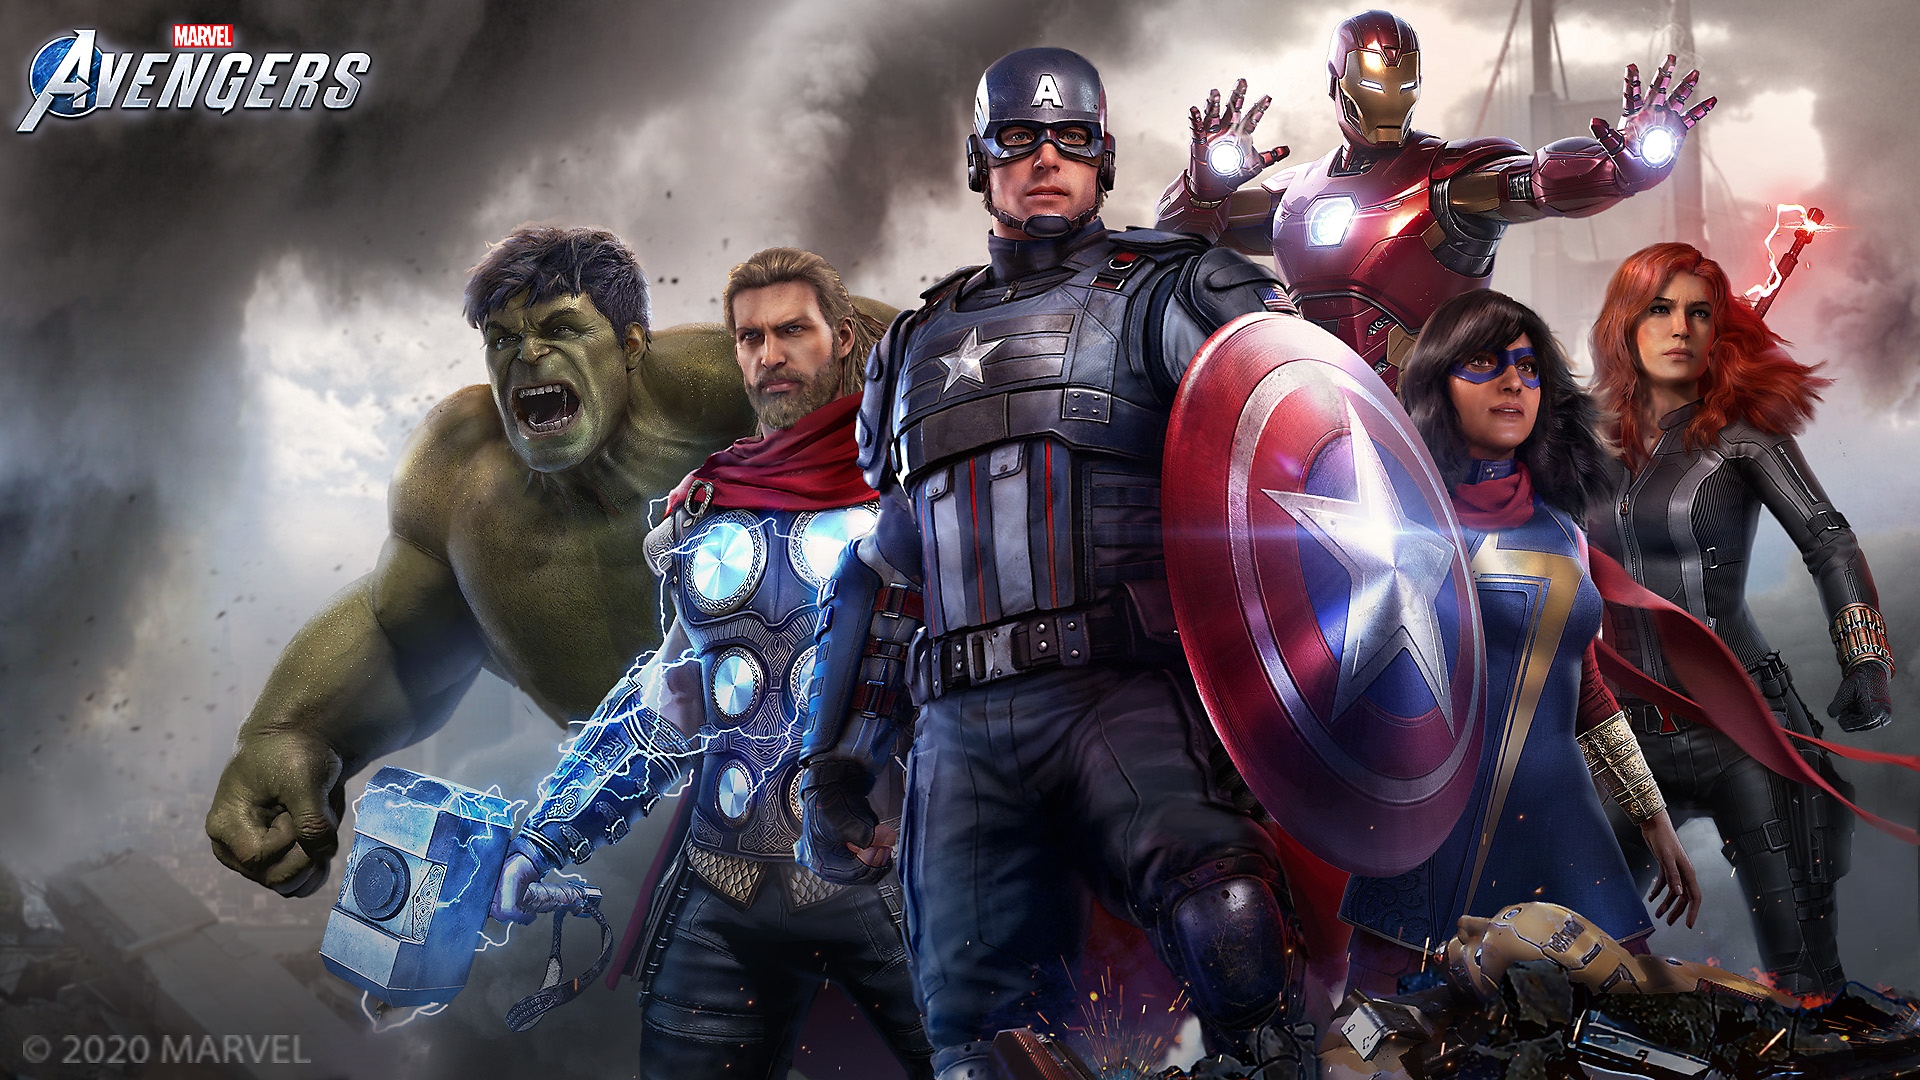 Marvel’s Avengers (アベンジャーズ)：ローンチトレーラー│PS4